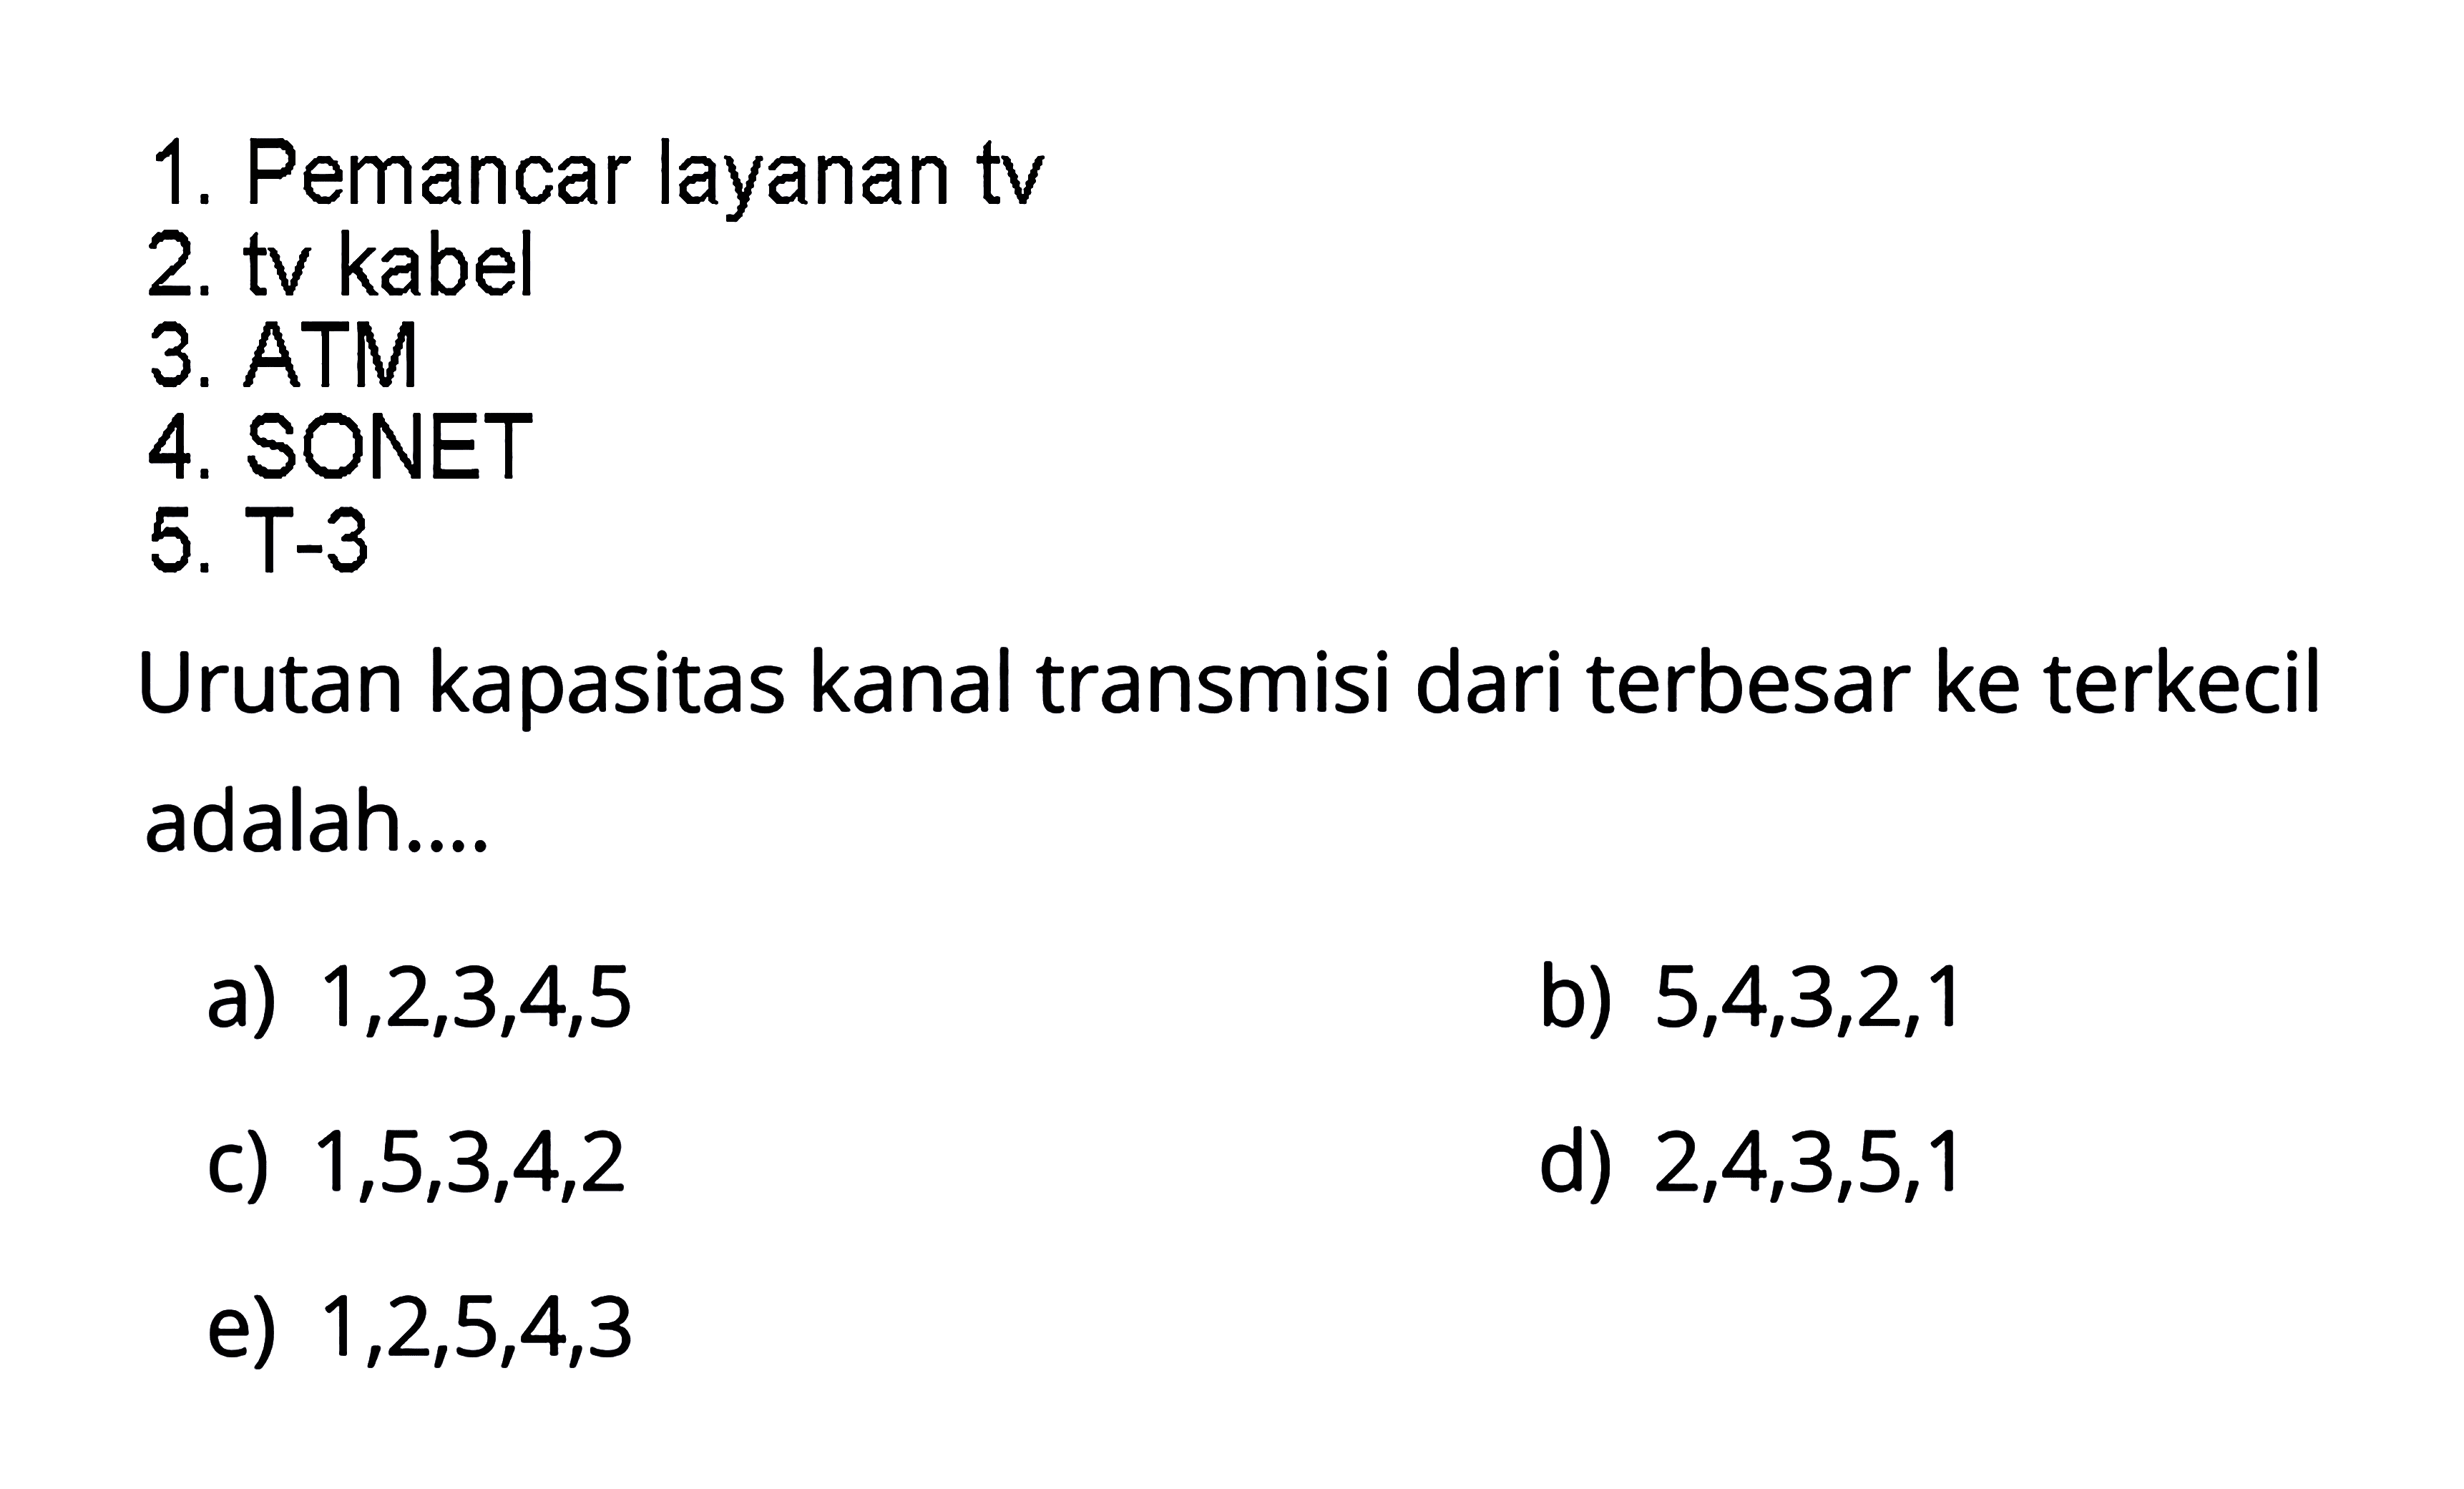 1. Pemancar layanan tv 2. tv kabel 3. ATM 4. SONET 5. T-3 Urutan kapasitas kanal transmisi dari terbesar ke terkecil adalah... a) 1,2,3,4,5 b) 5,4,3,2,1 c) 1,5,3,4,2 d) 2,4,3,5,1 e) 1,2,5,4,3 